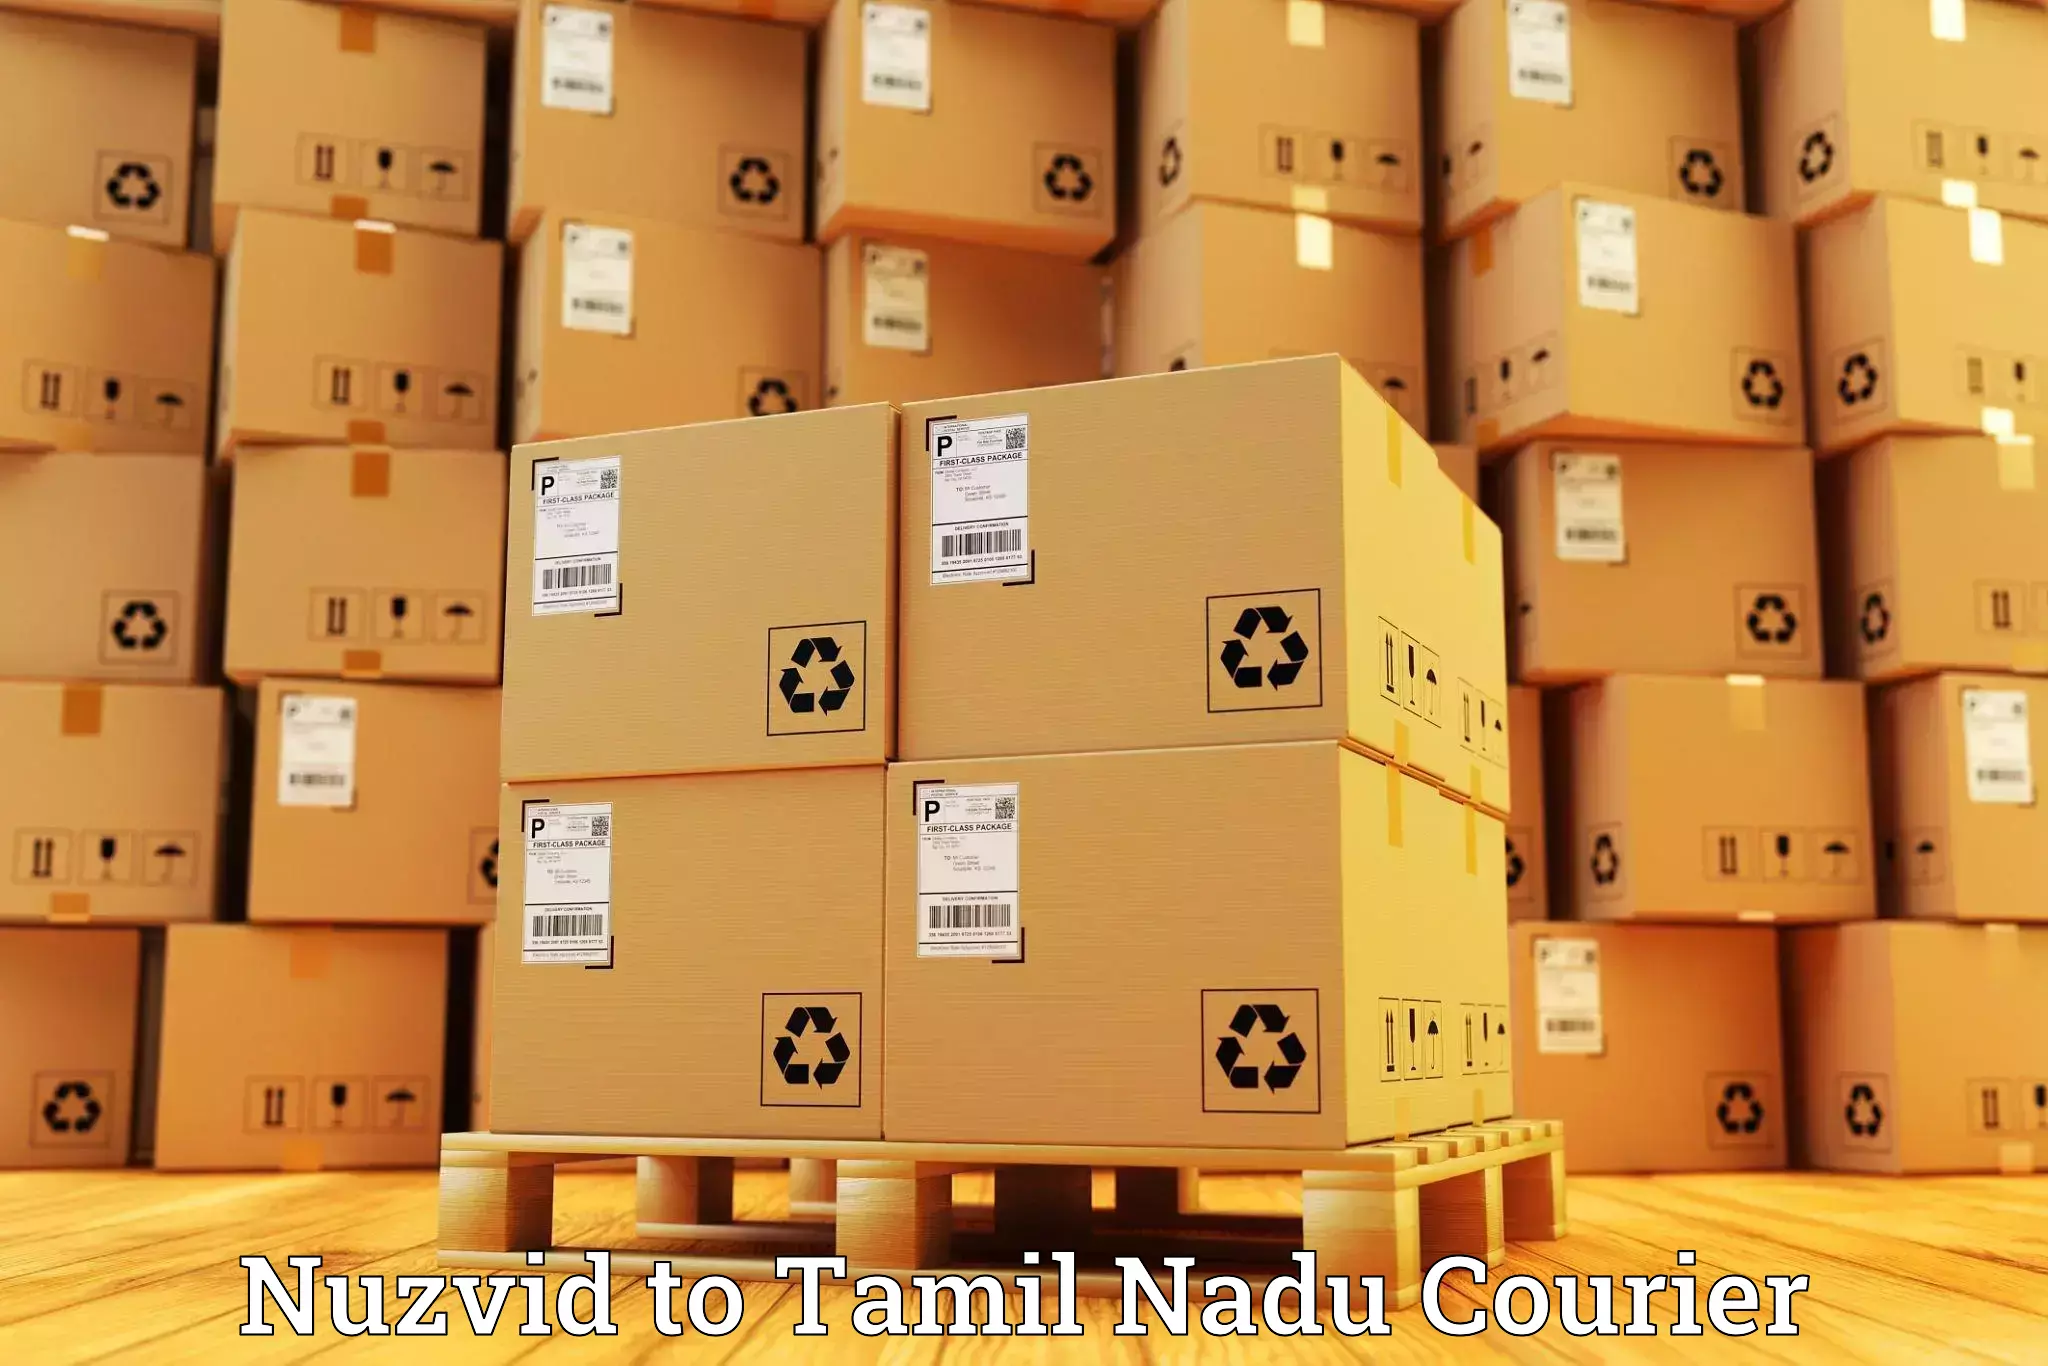 Global shipping networks Nuzvid to Villupuram